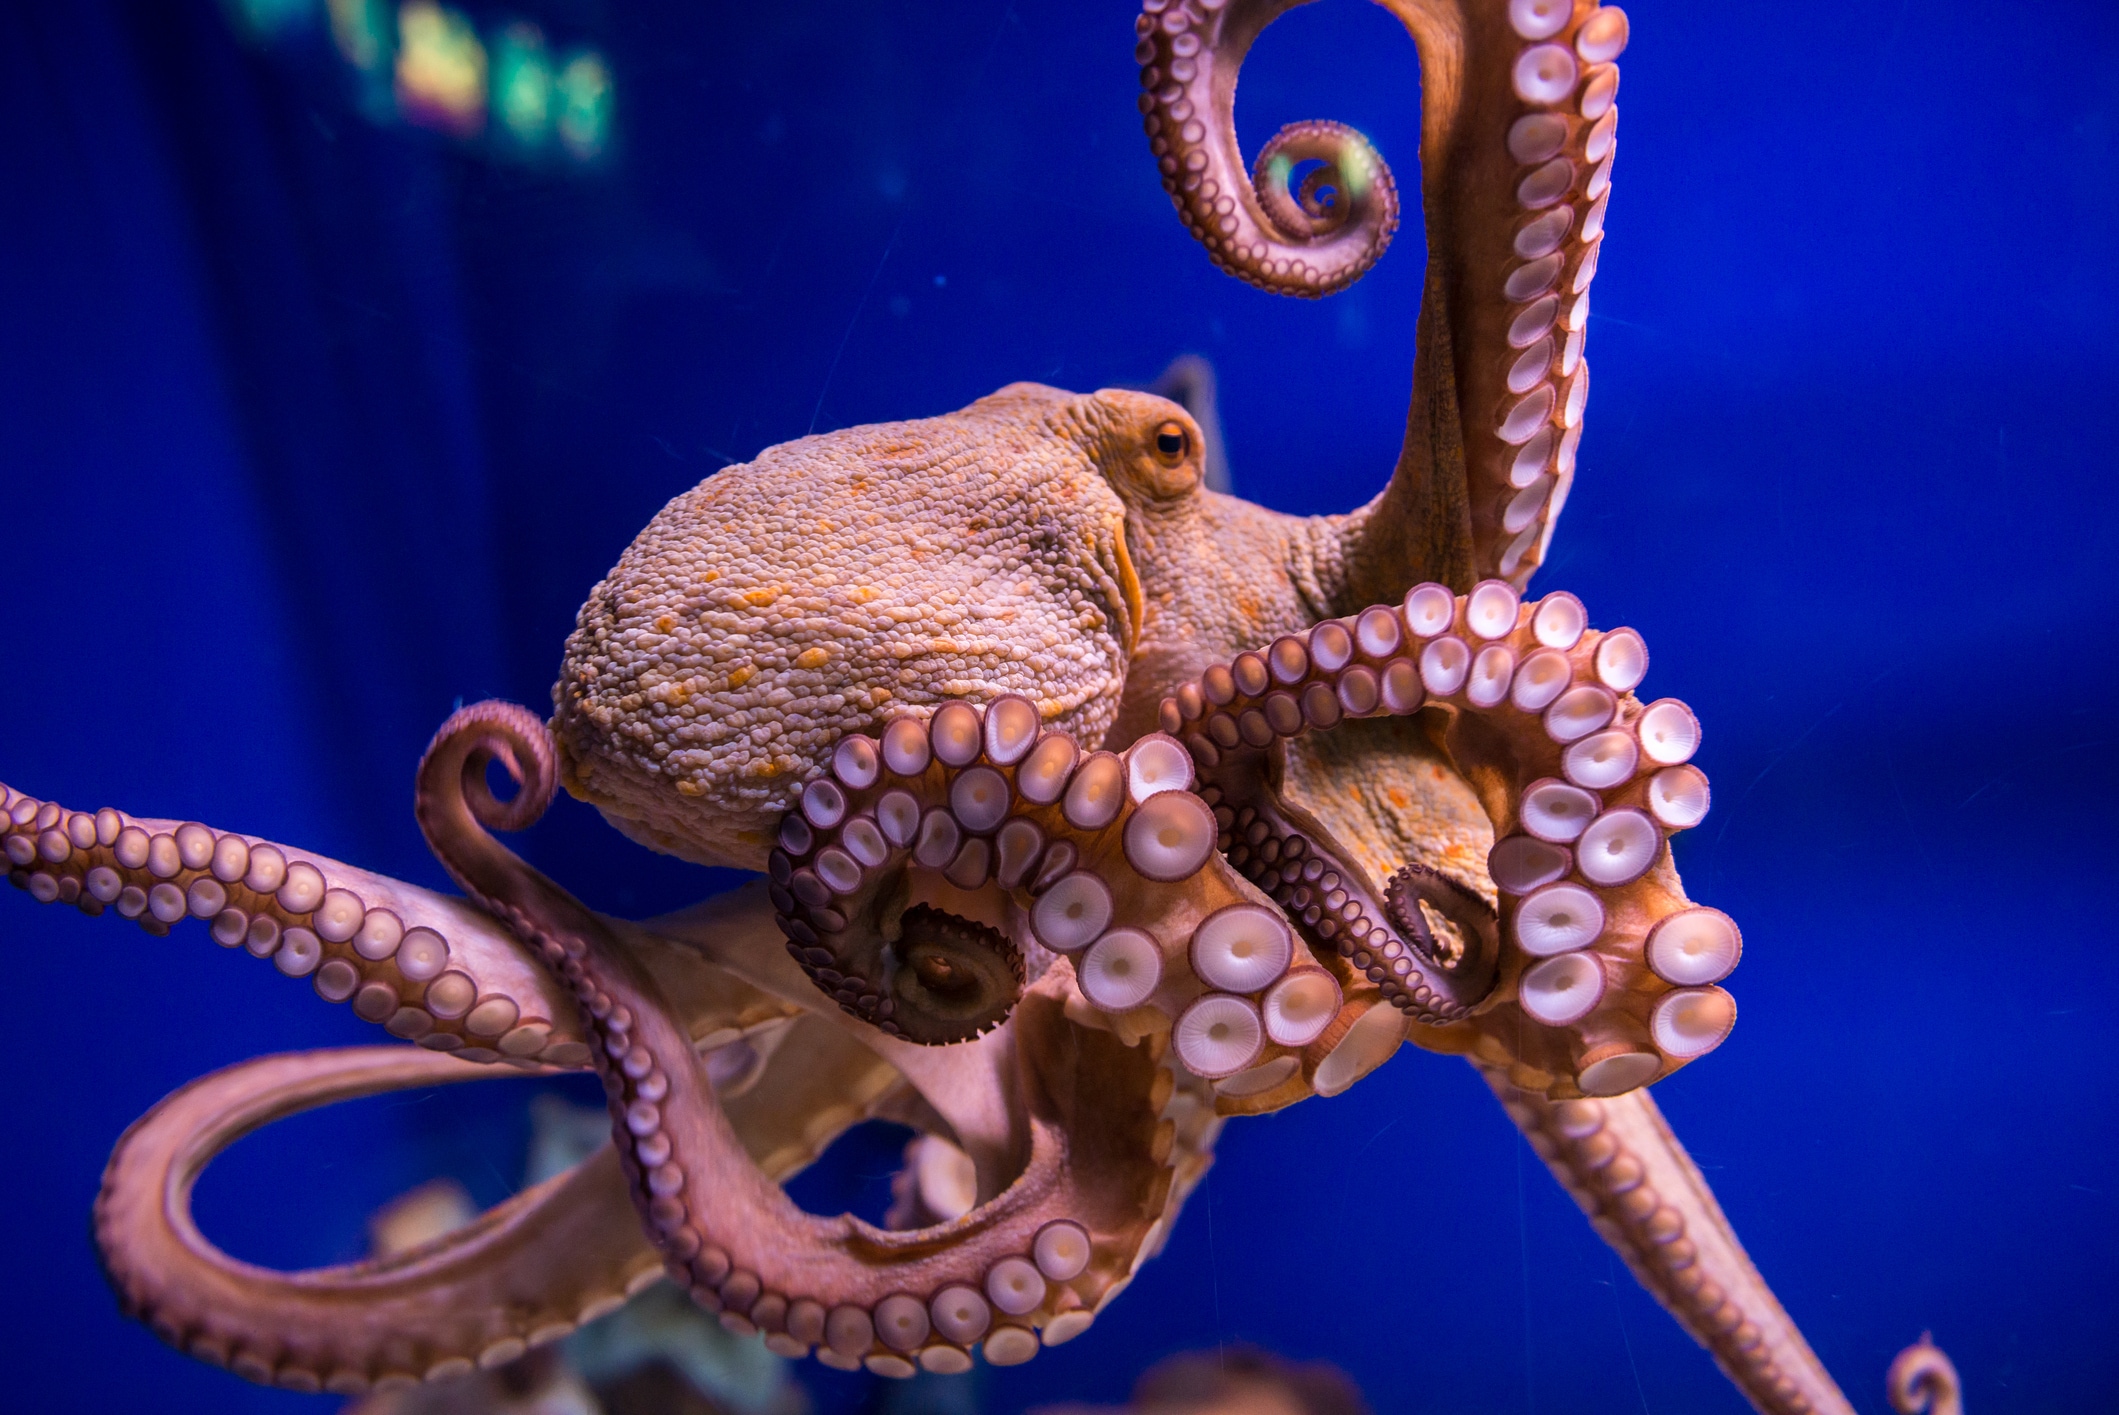 Partydrug maakt octopus sociaal en flirterig